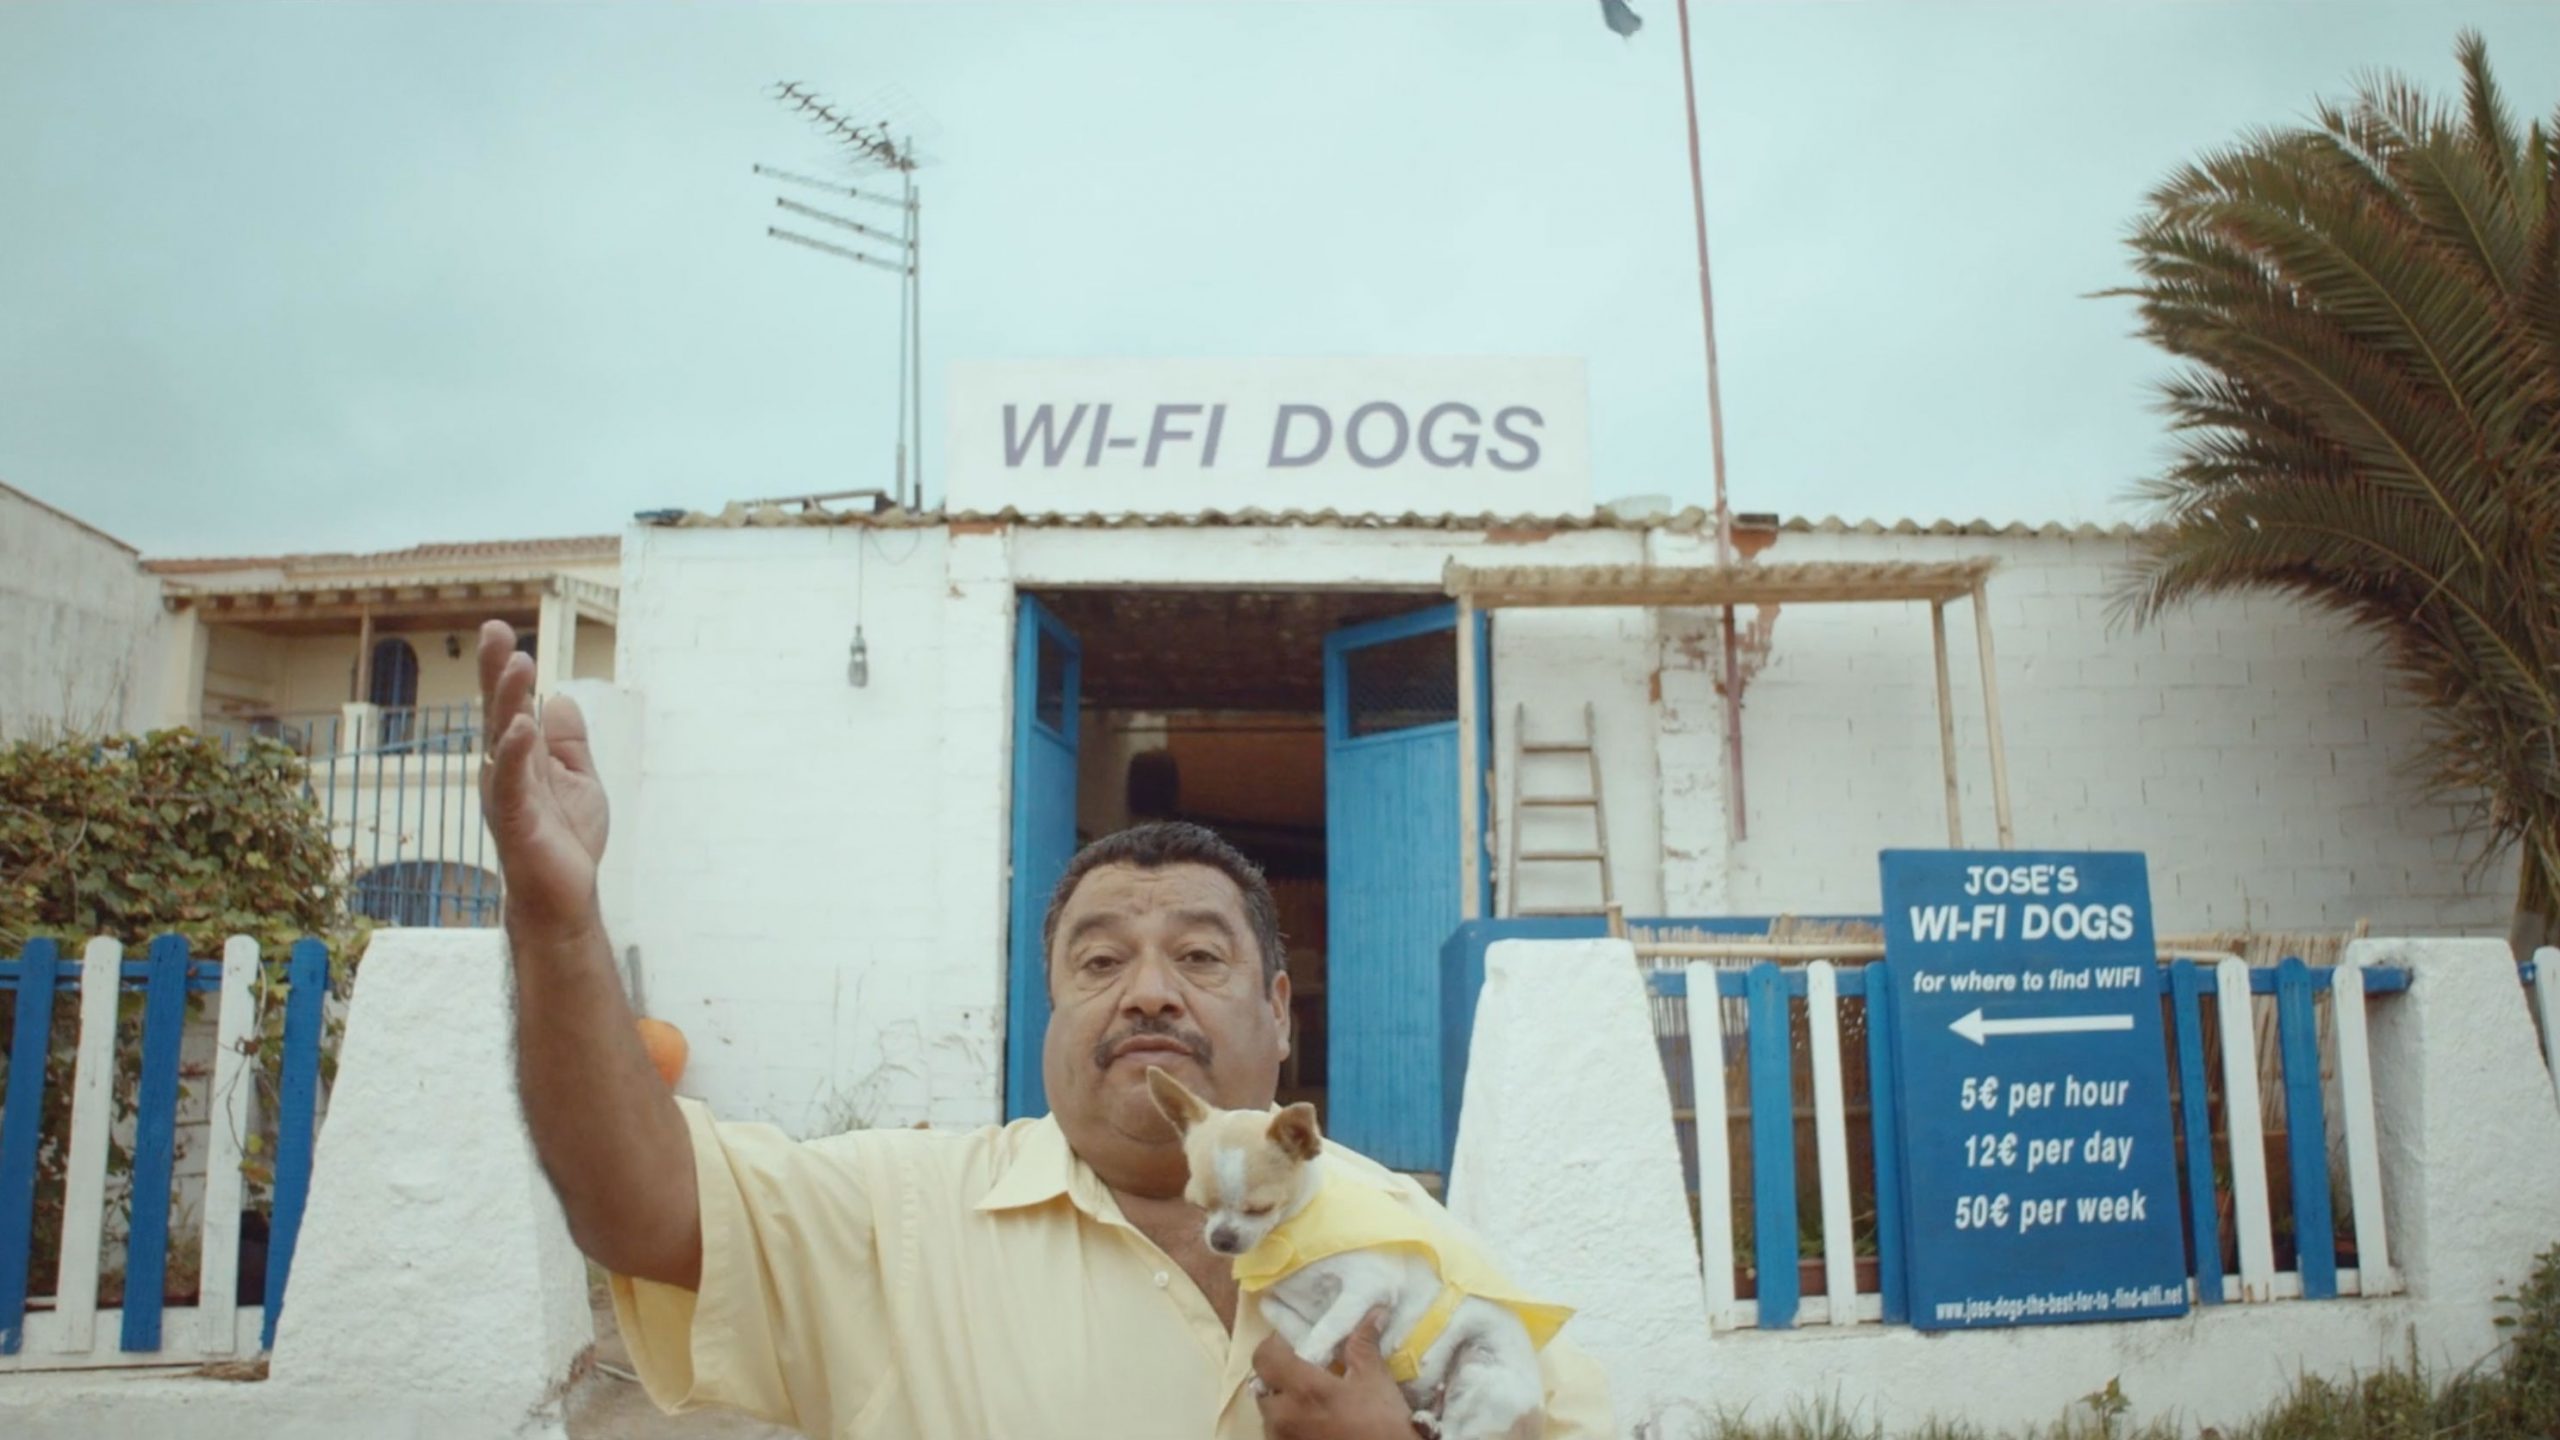 Jose’s Wifi Dogs